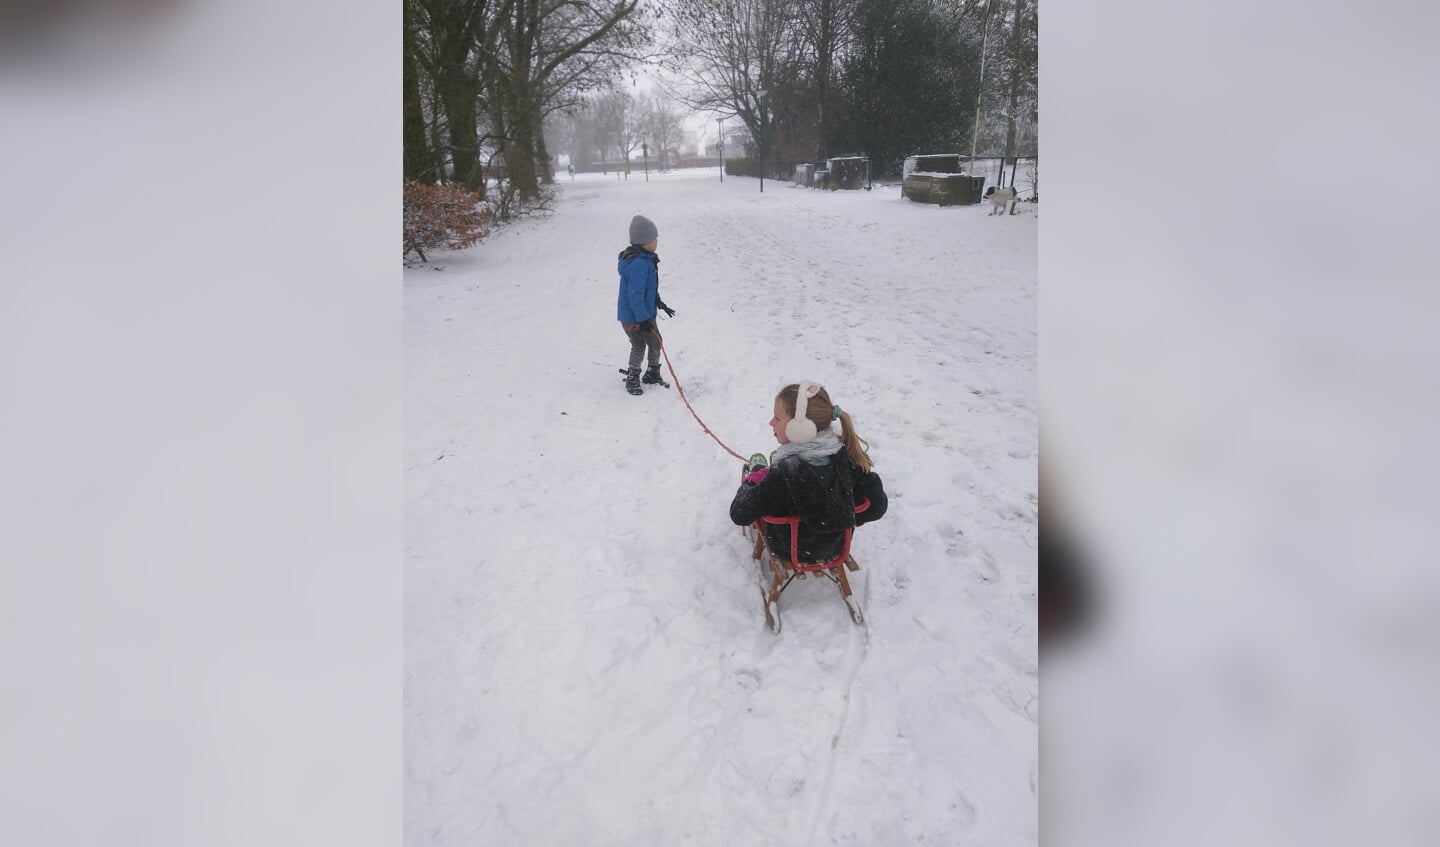 Maaike en Maarten, kinderen van dominee Bertie Boersma veilig op weg in de sneeuw. 